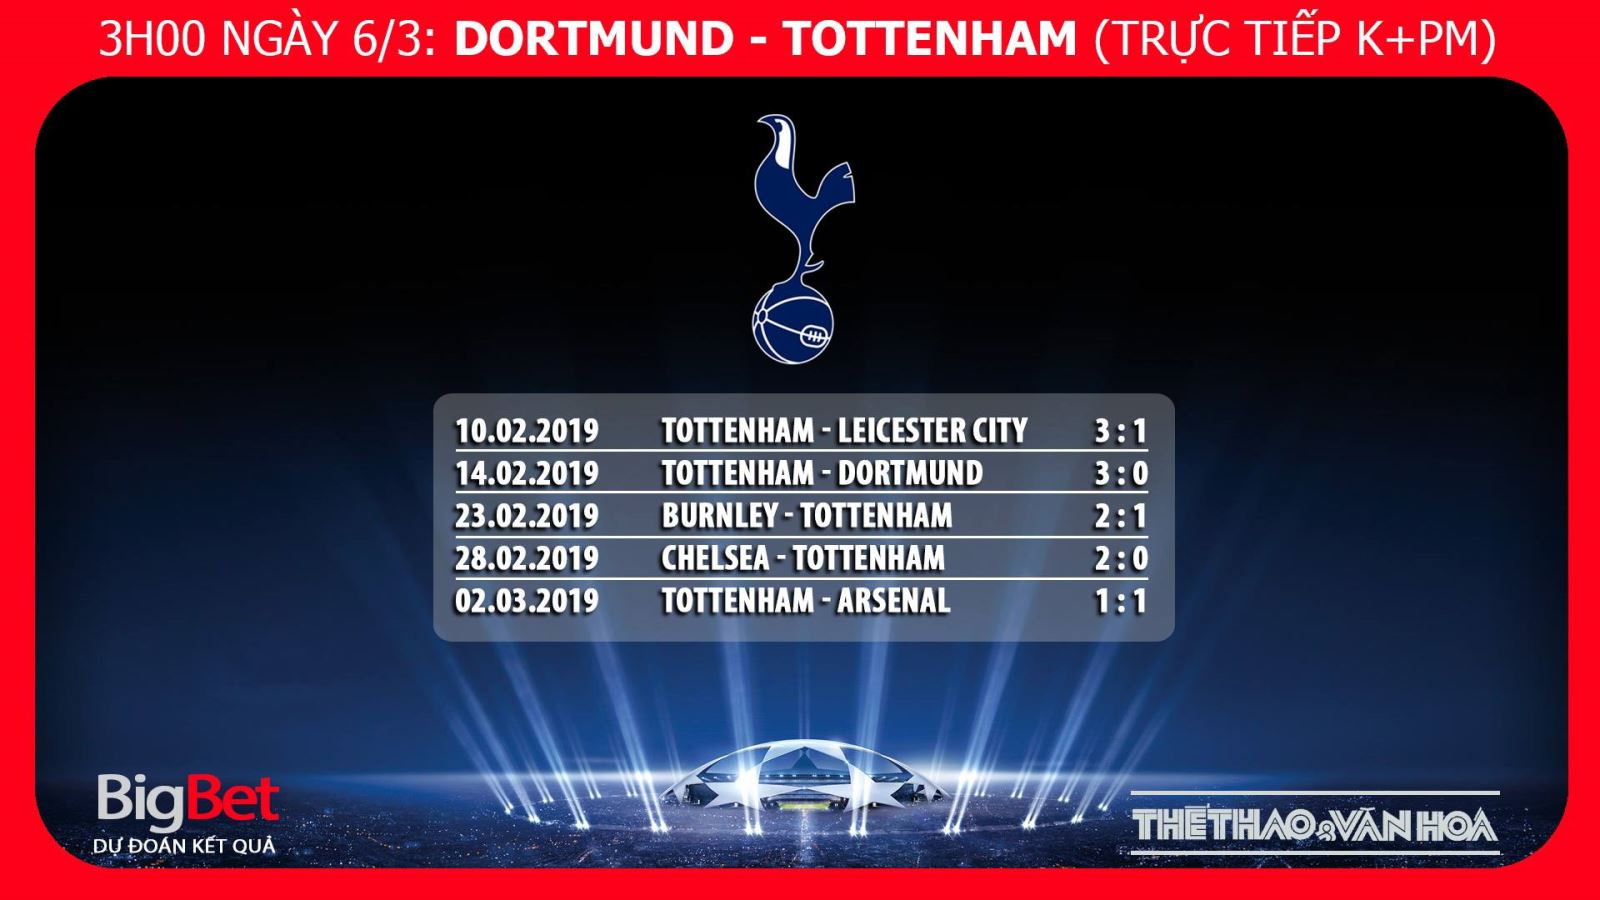 Chú thích kèo Dortmund vs Tottenham, kèo Tottenham, nhận định bóng đá Dortmund vs Tottenham, dự đoán bóng đá Dortmund Tottenham, truc tiep bong da, truc tiep C1, cup C1 trực tiếp bóng đá, trực tiếp Dortmund, trực tiếp bó